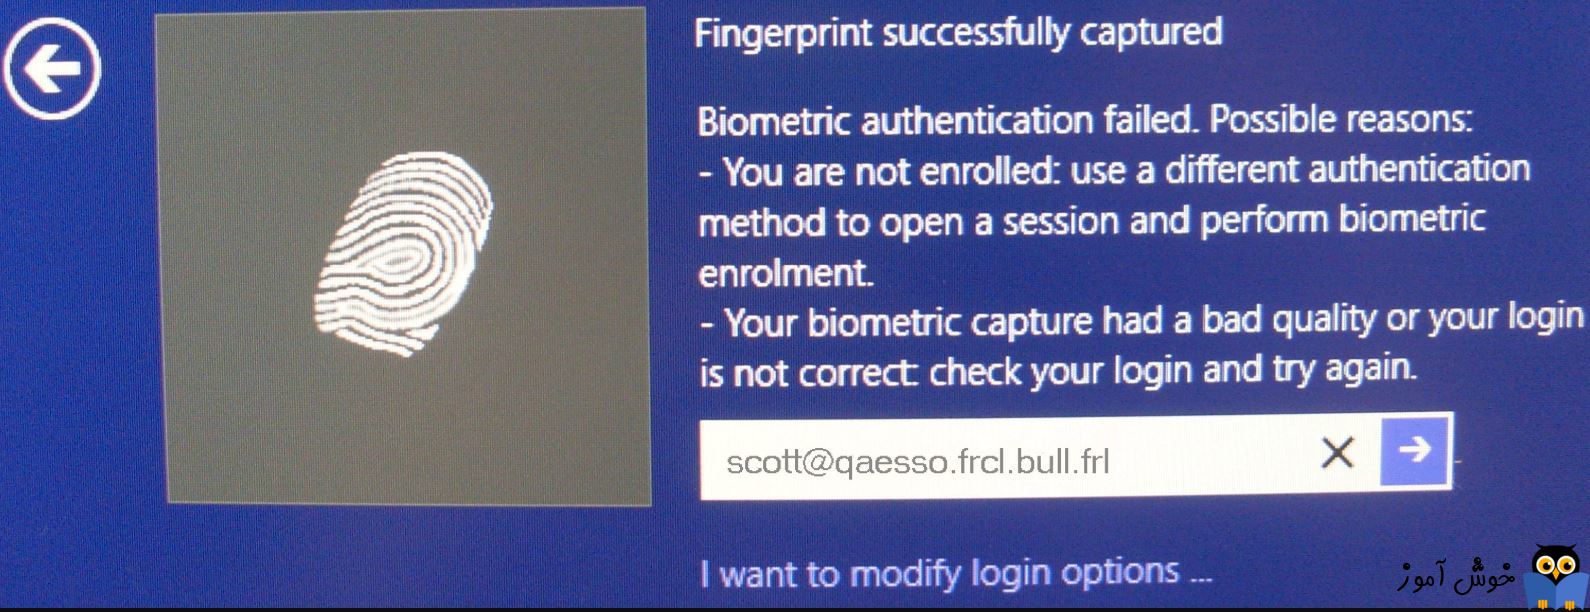 فعال یا غیرفعال کردن کاربران Domain برای لاگین به ویندوز با استفاده از Biometrics ها